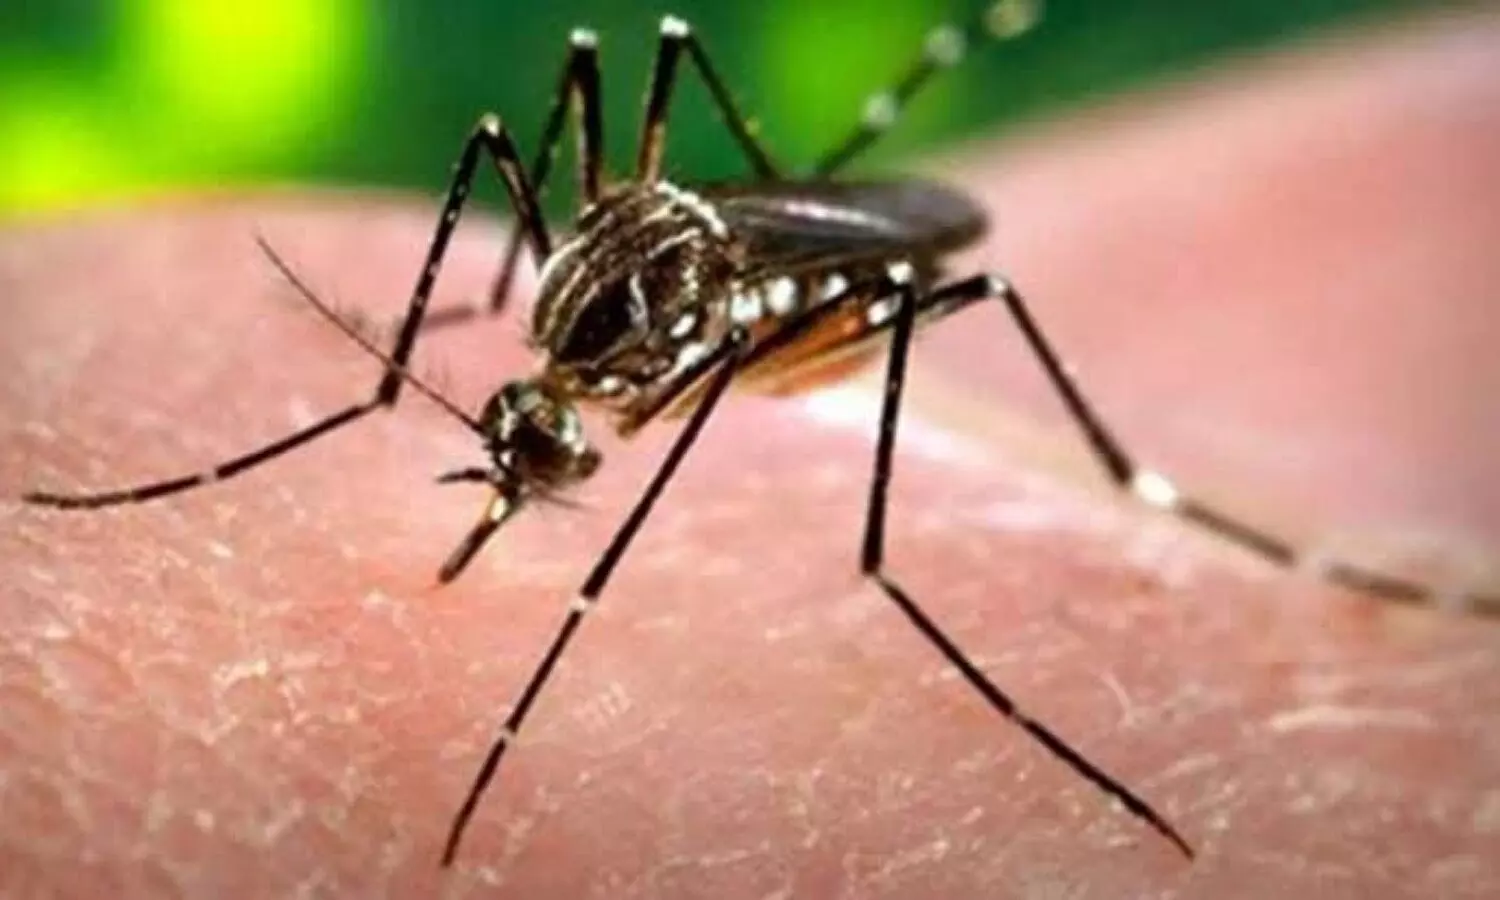 Kanpur me Zika Virus: जीका वायरस के संक्रमण का हुआ विस्फोट, एक साथ मिले 25 नए मरीज